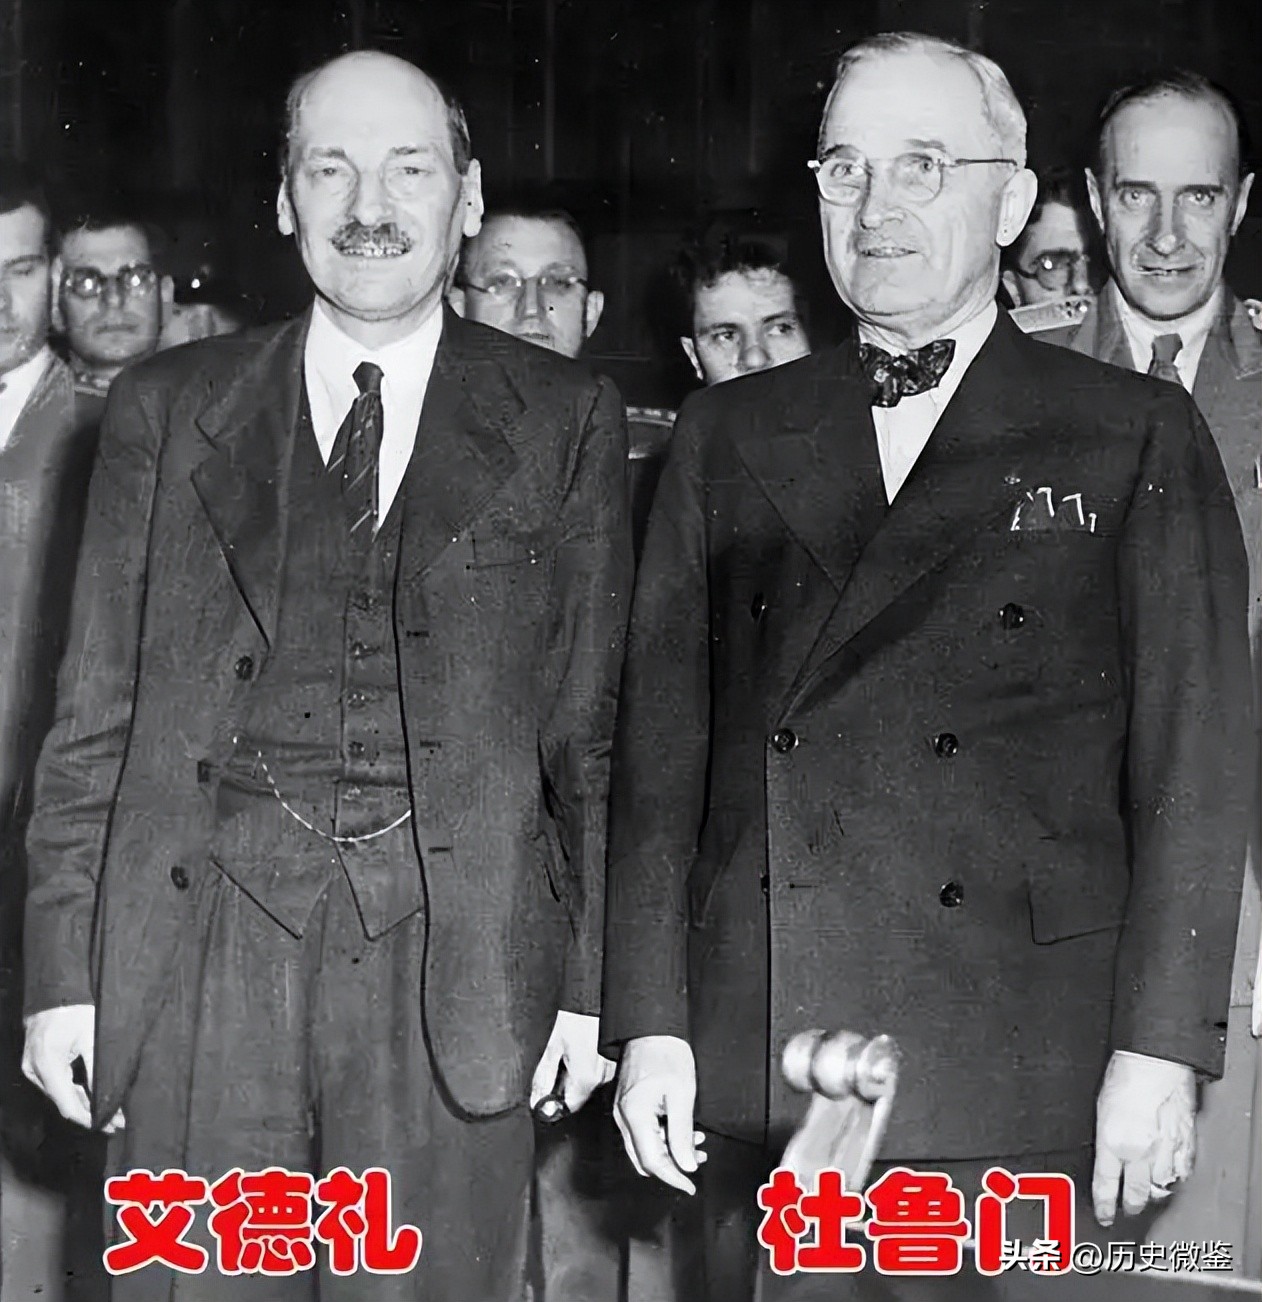 49年前后英国刻意针对中国三次，没想到帮了大忙，这是怎么回事？